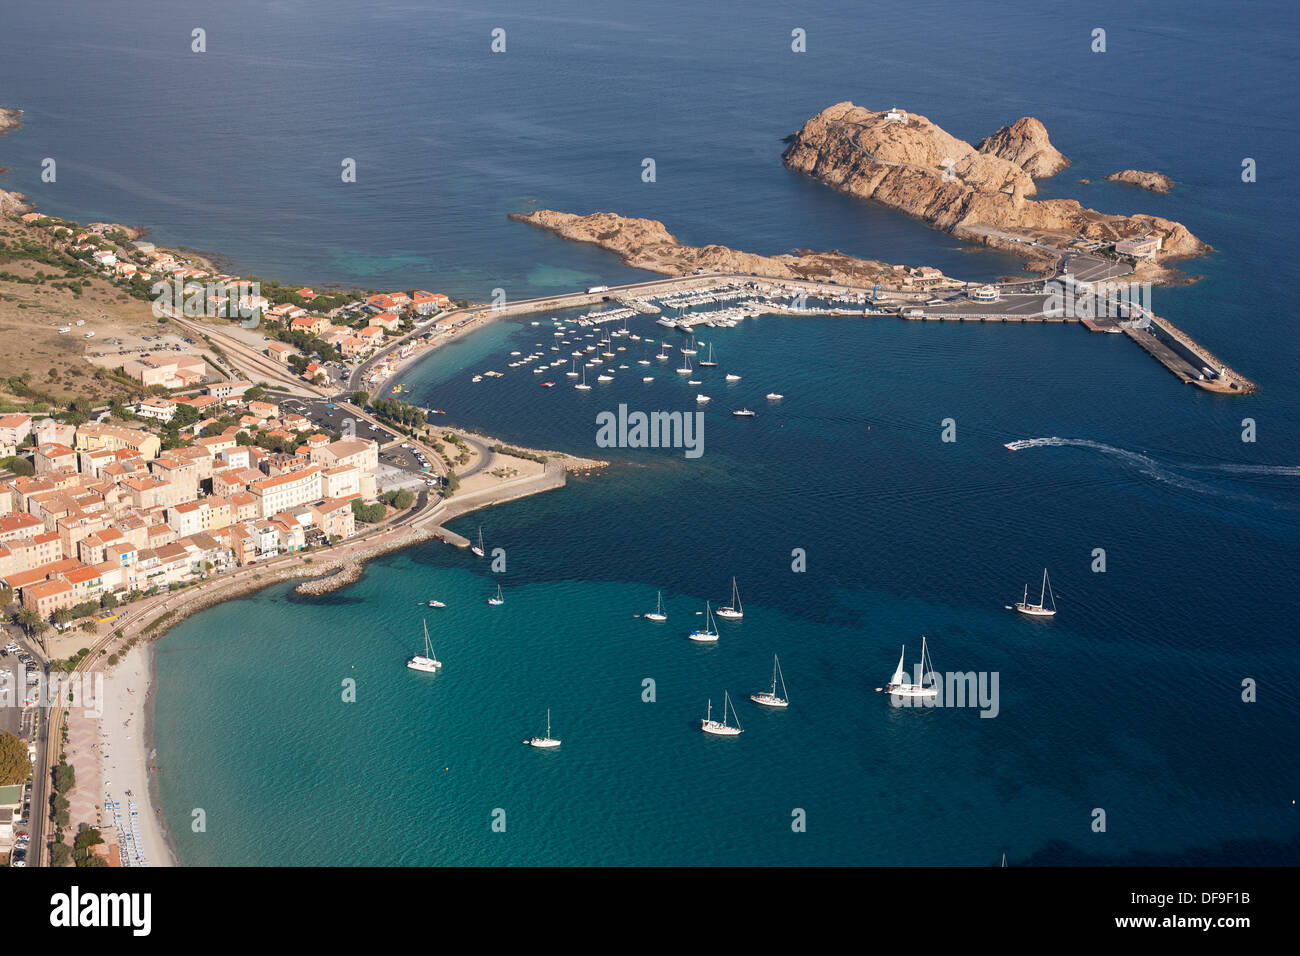 VISTA AEREA. Città di Île Rousse con la città vecchia e il molo che la collega ad un'isola rocciosa utilizzata come terminal dei traghetti. Corsica, Francia. Foto Stock